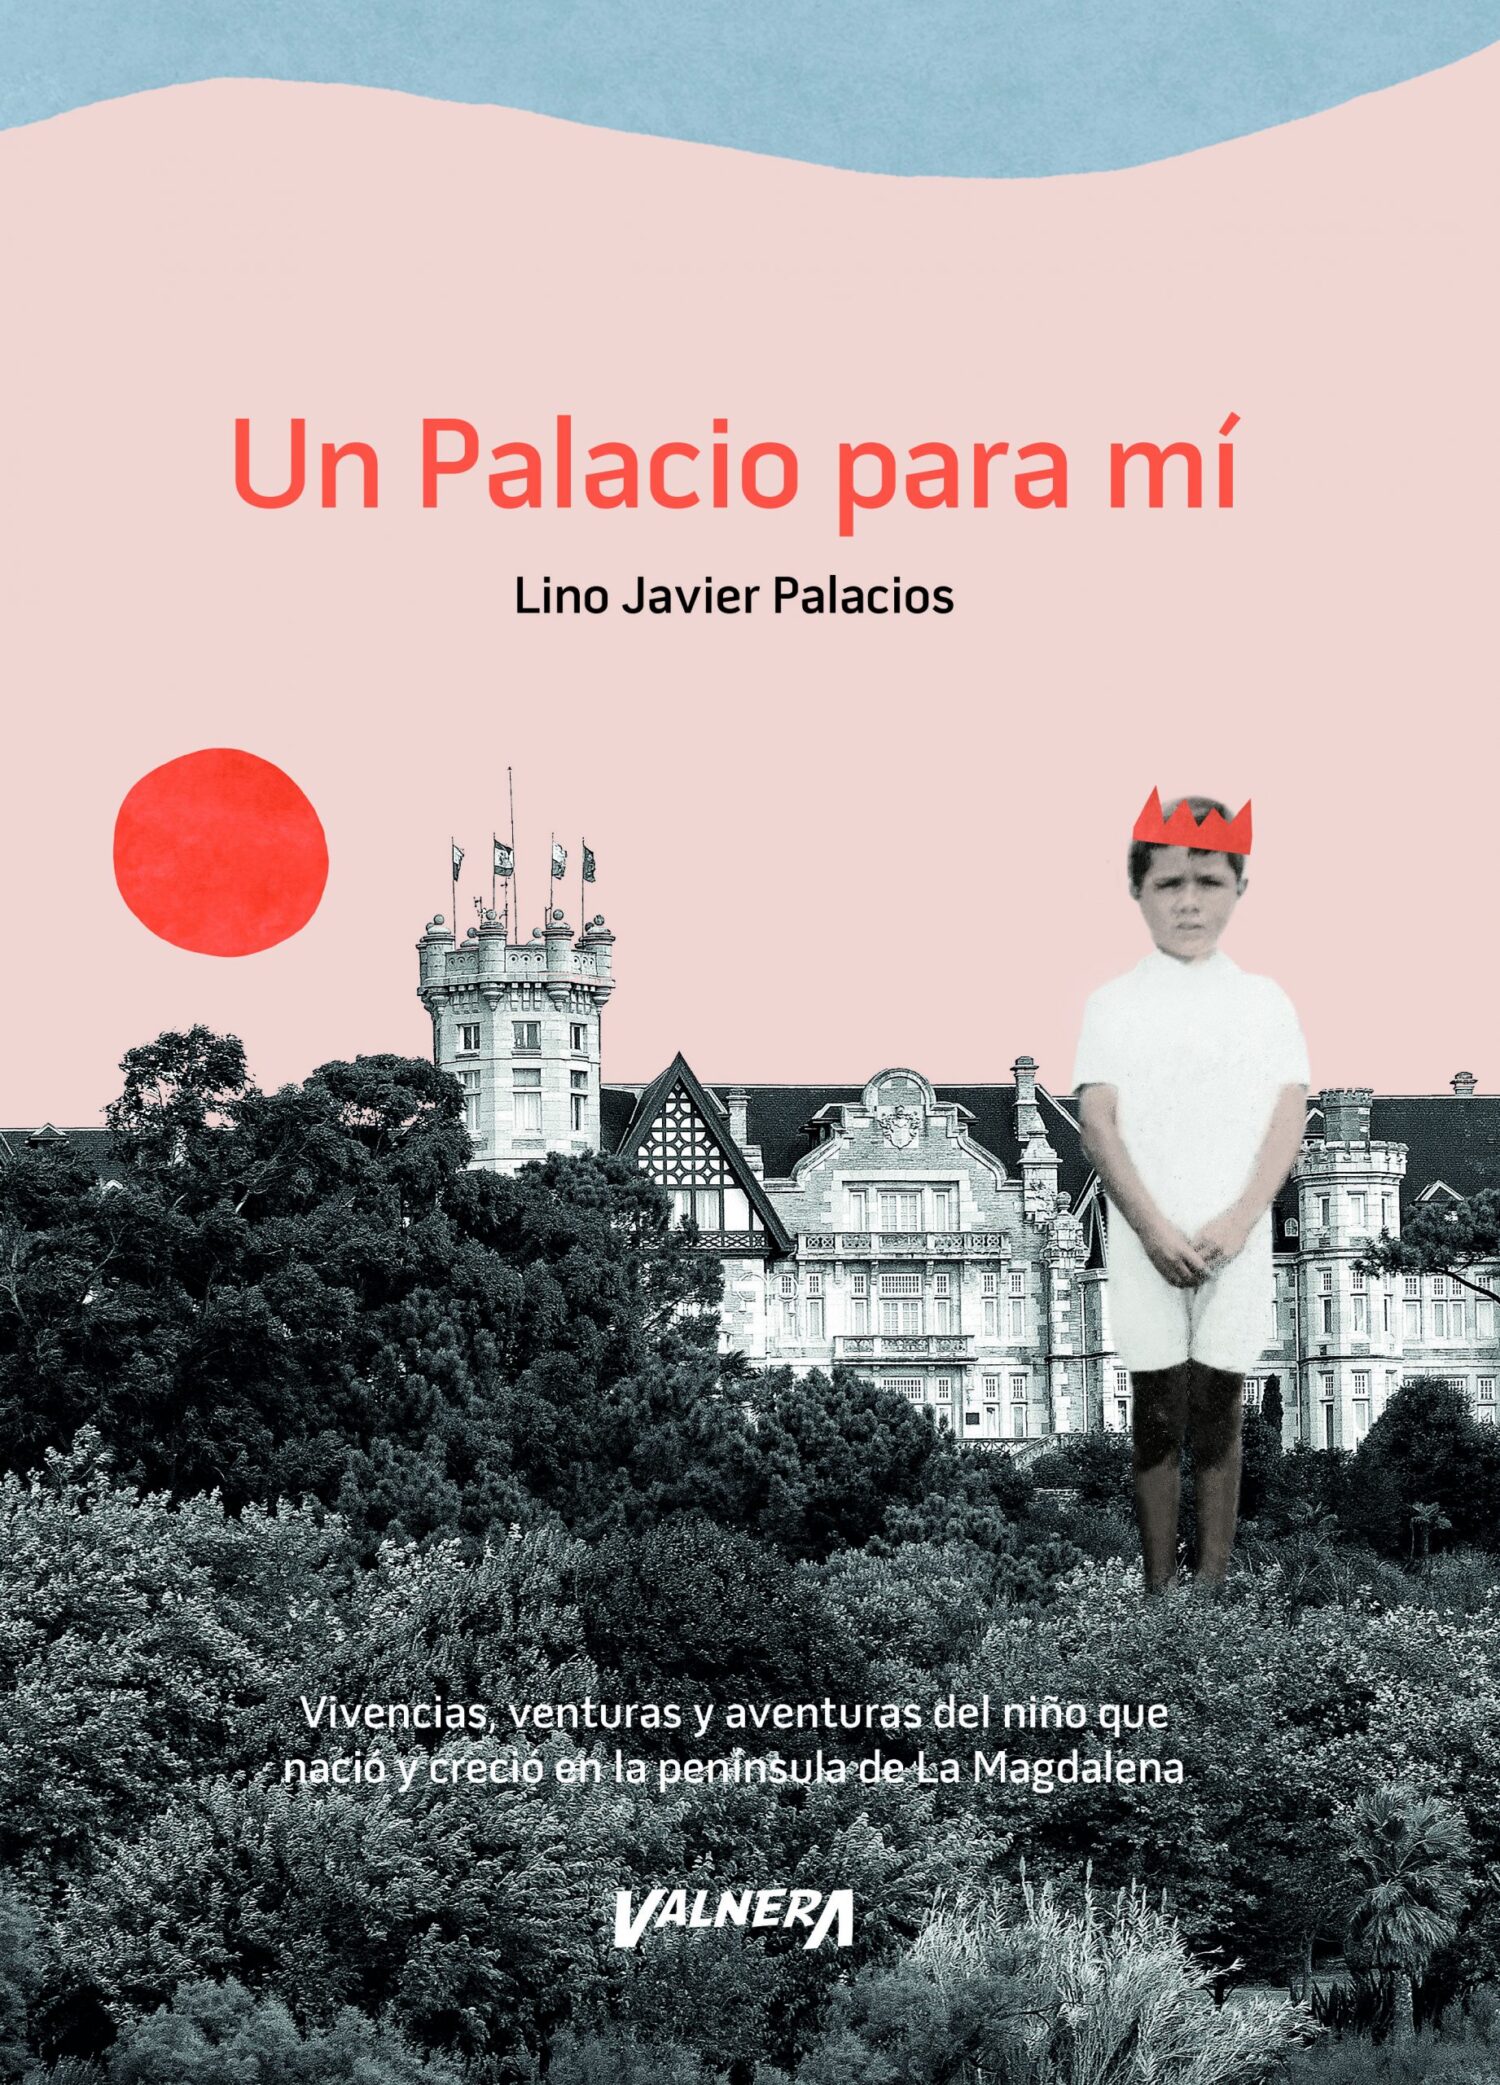 El periodista y escritor Lino Javier Palacios acerca a UNATE la historia más desconocida de El Palacio de La Magdalena